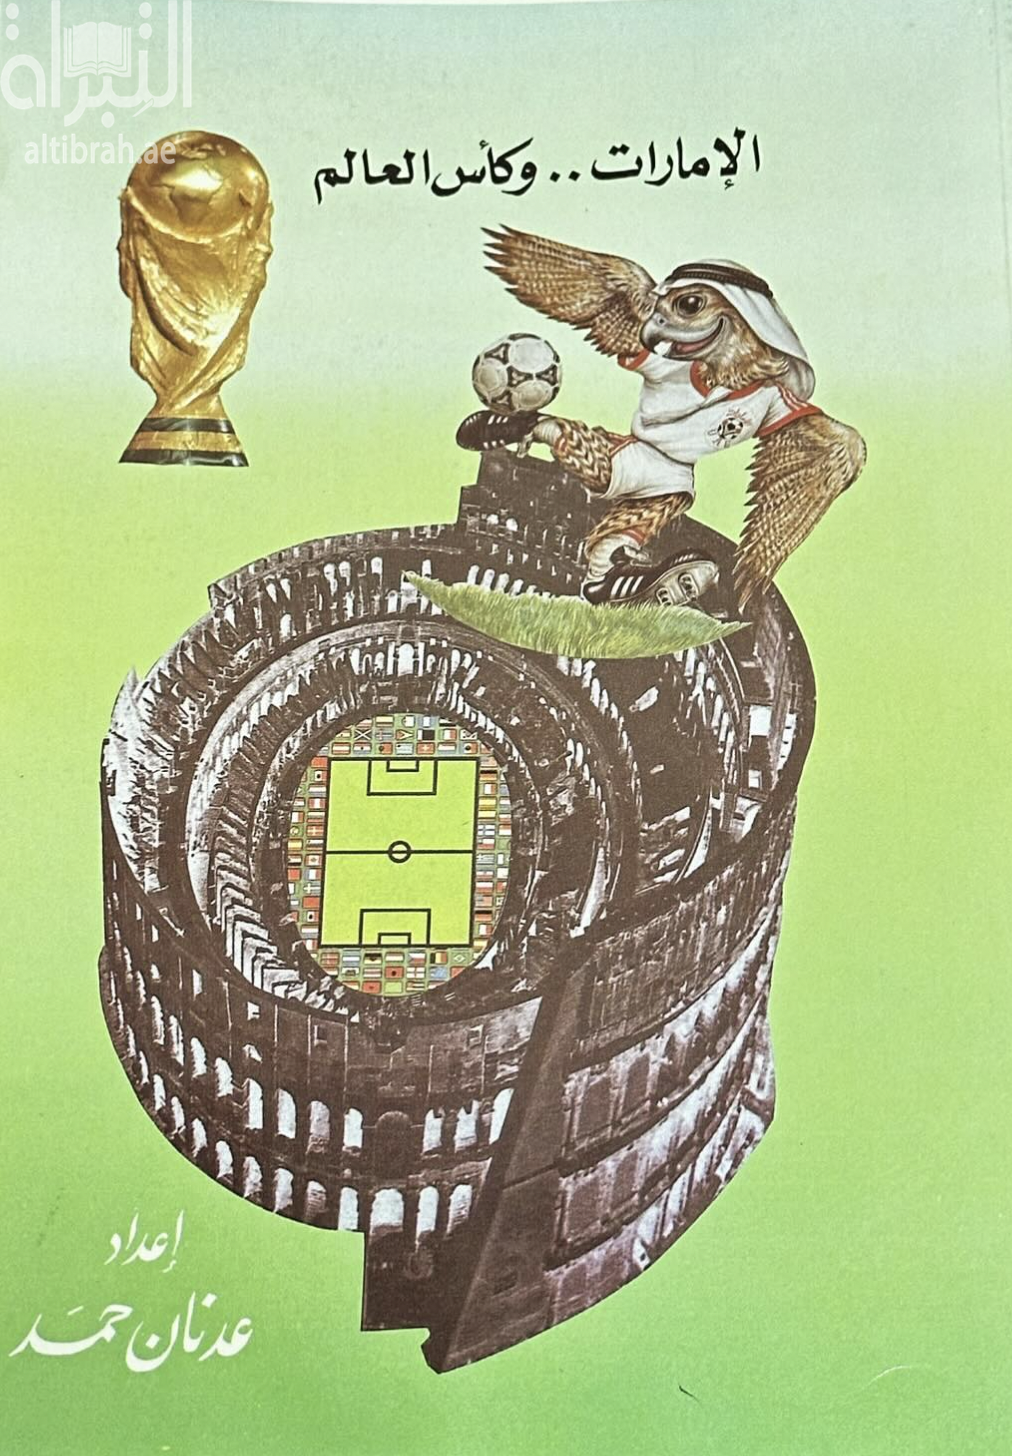 الإمارات وكأس العالم